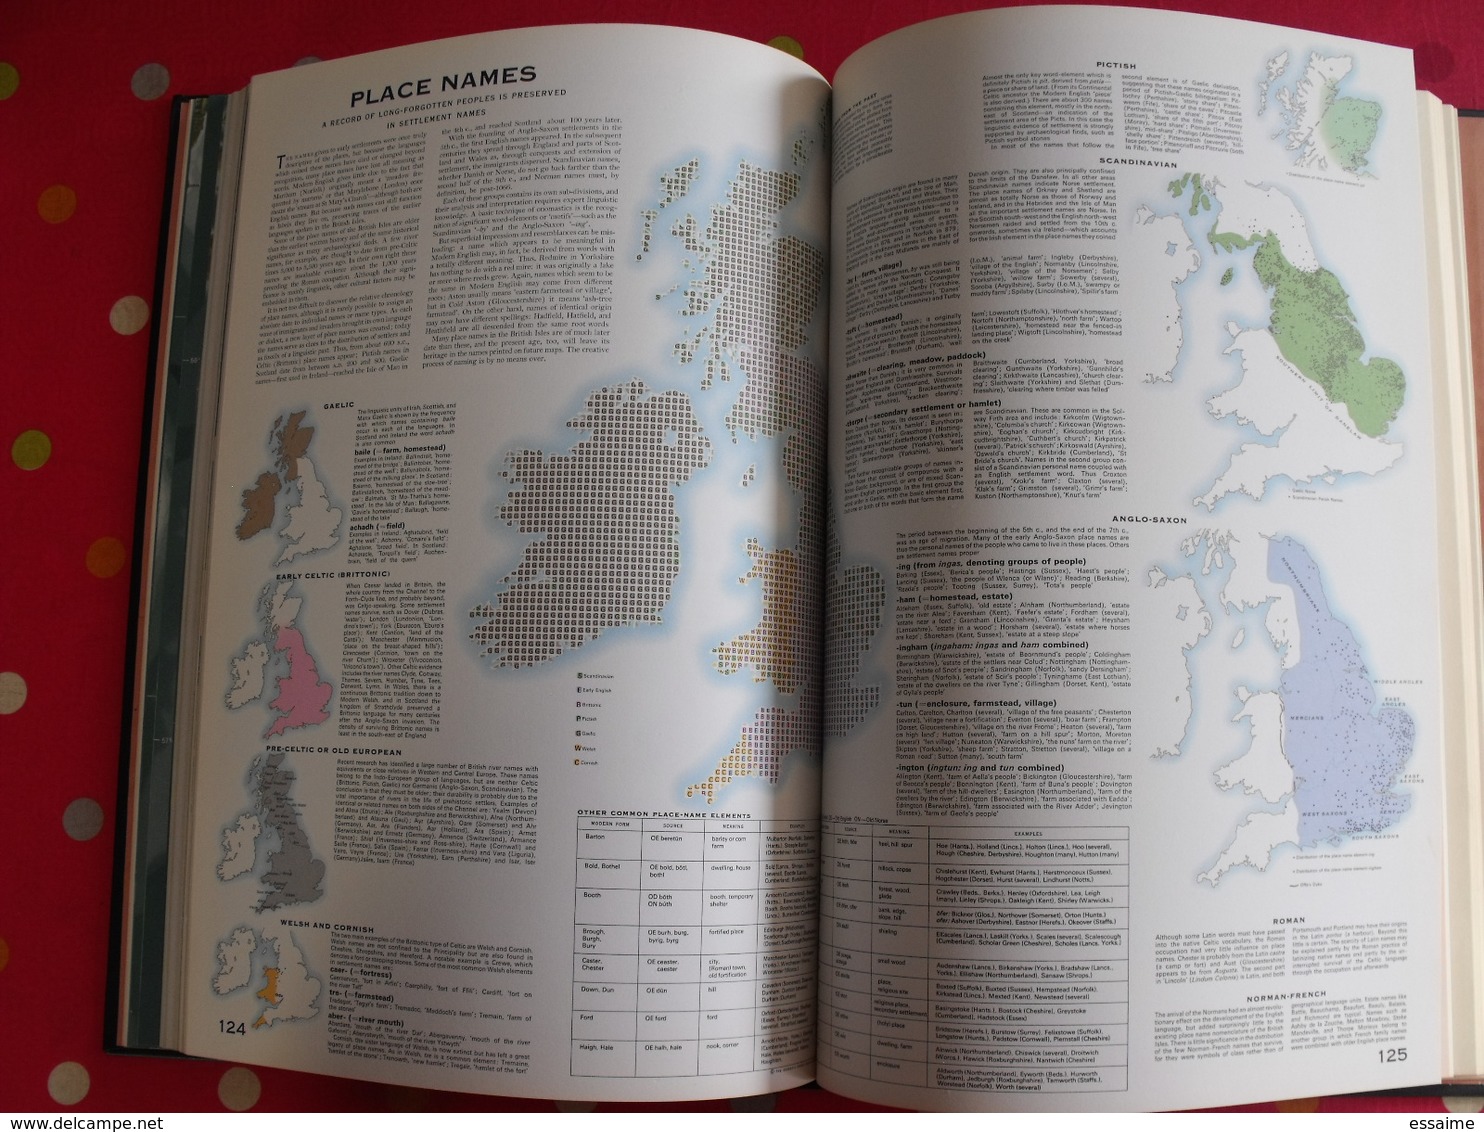 complete atlas of the britich isles. 1965. iles britanniques. très nombreuses cartes et index.